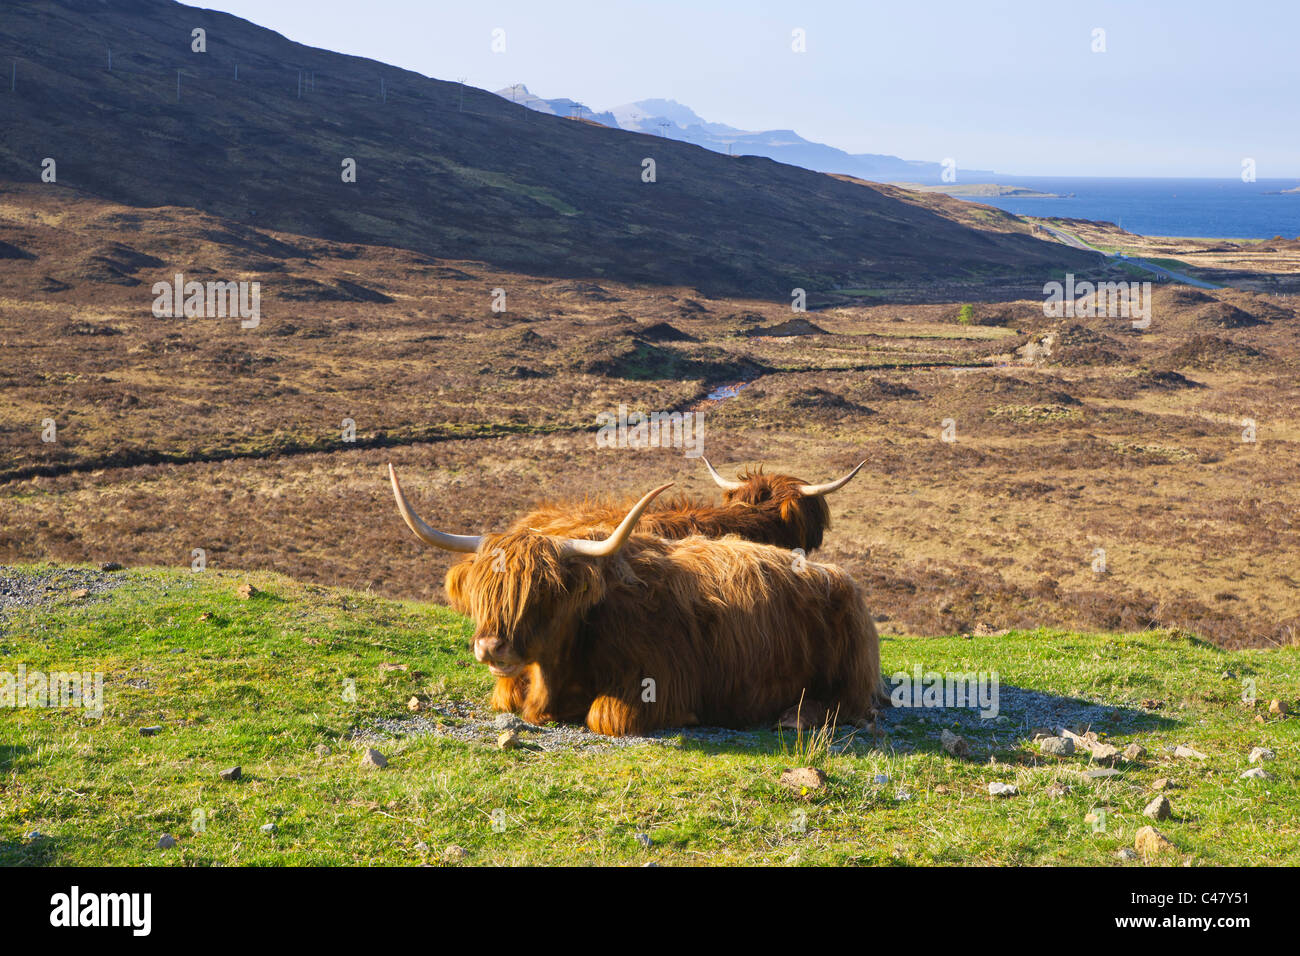 Les vaches Highland, Cuillin, Ile de Skye, Ecosse, région des Highlands Banque D'Images